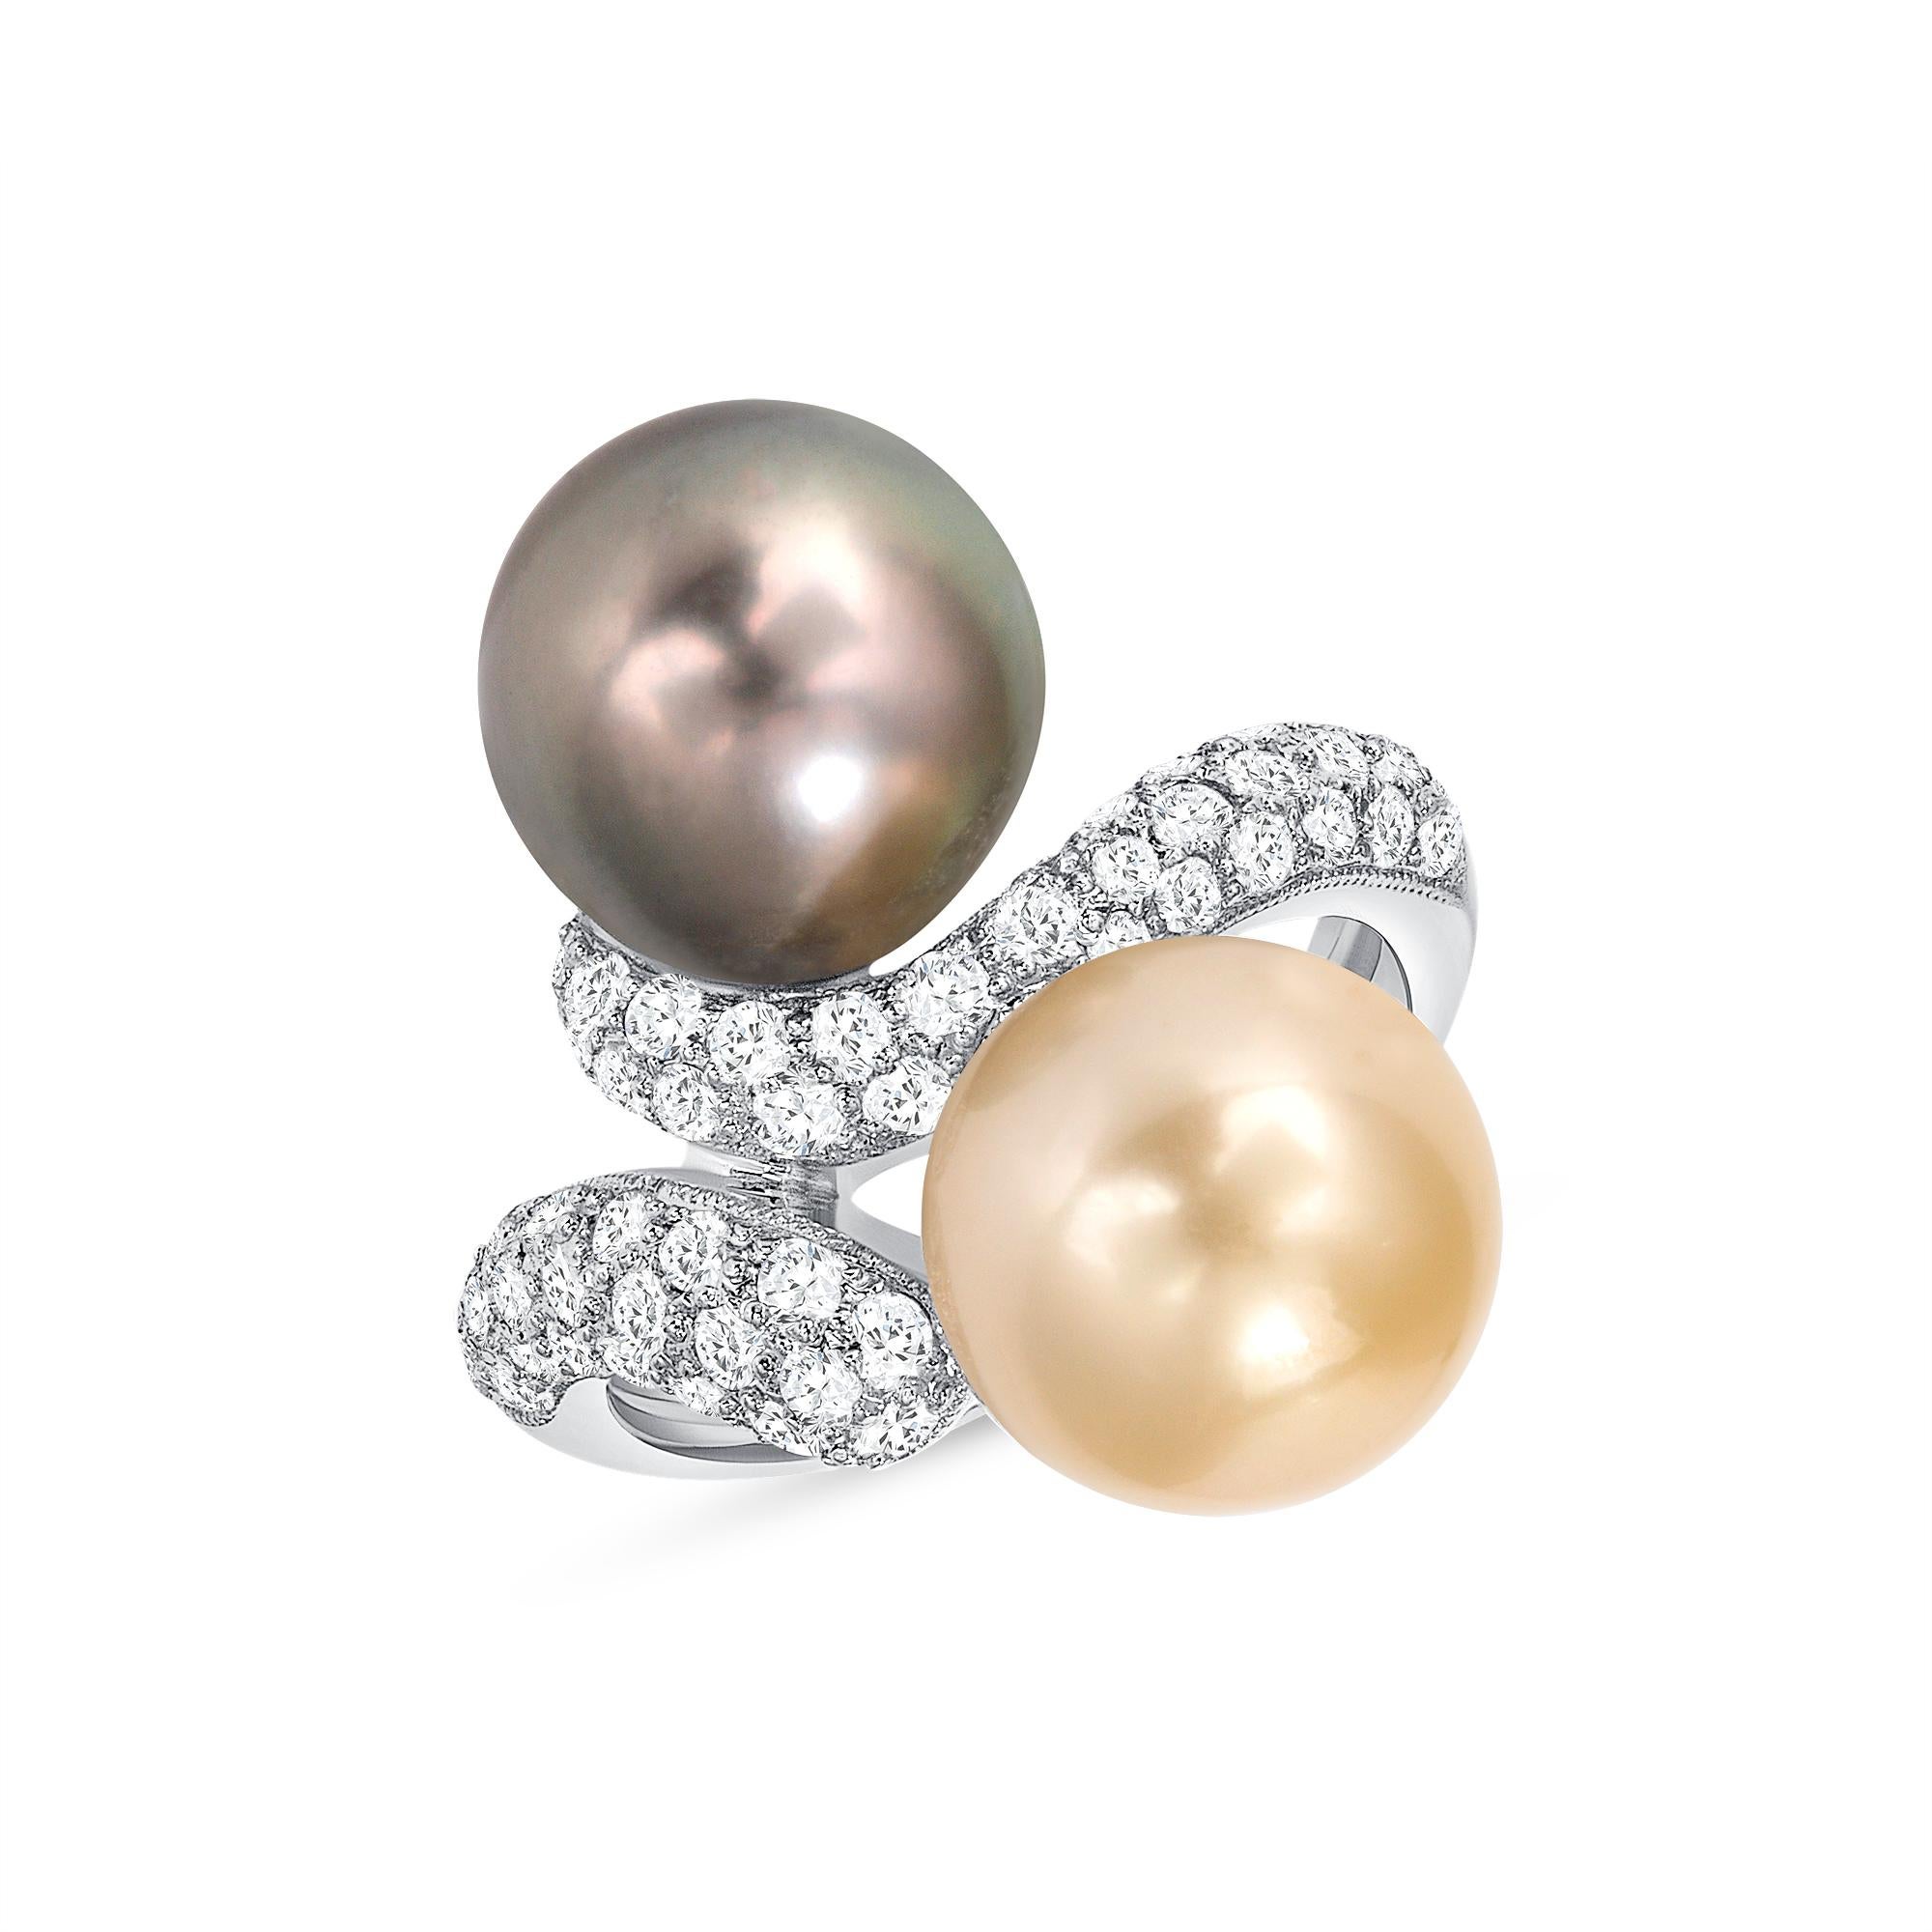 Diamant blanc authentique 14 carats
2 perles des mers du Sud de Tahiti (10 mm chacune)
Diamants de 0,70 carat
Poids total de l'or : 6,6 grammes
